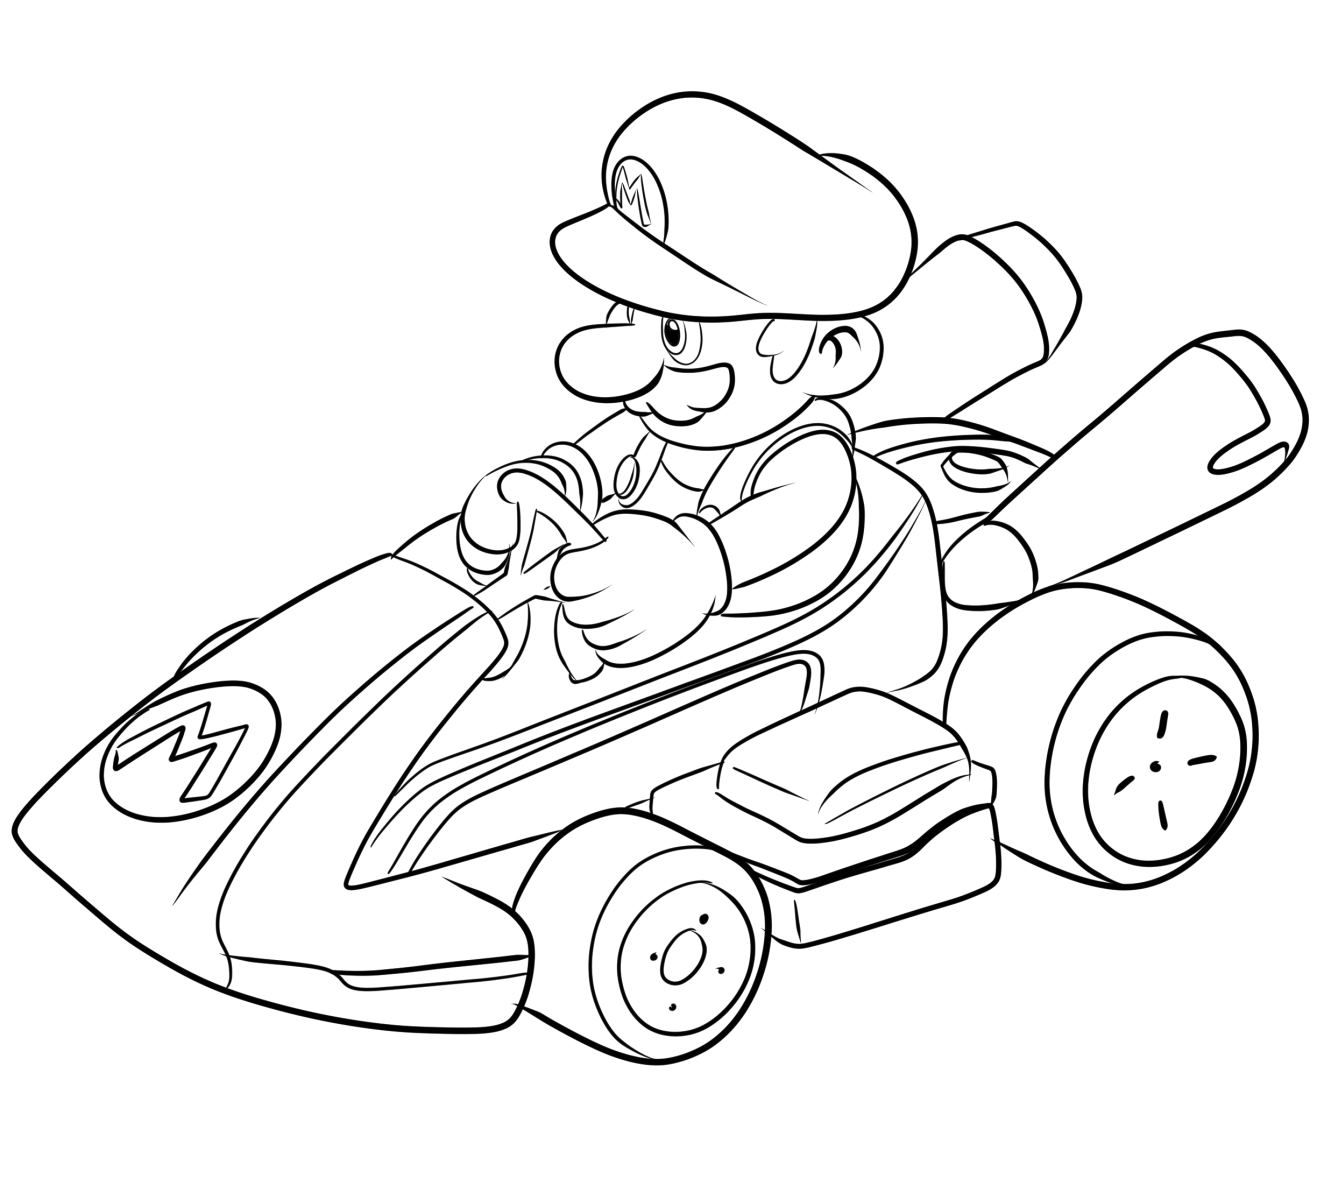 Desenho 05 de Mario Kart para imprimir e colorir